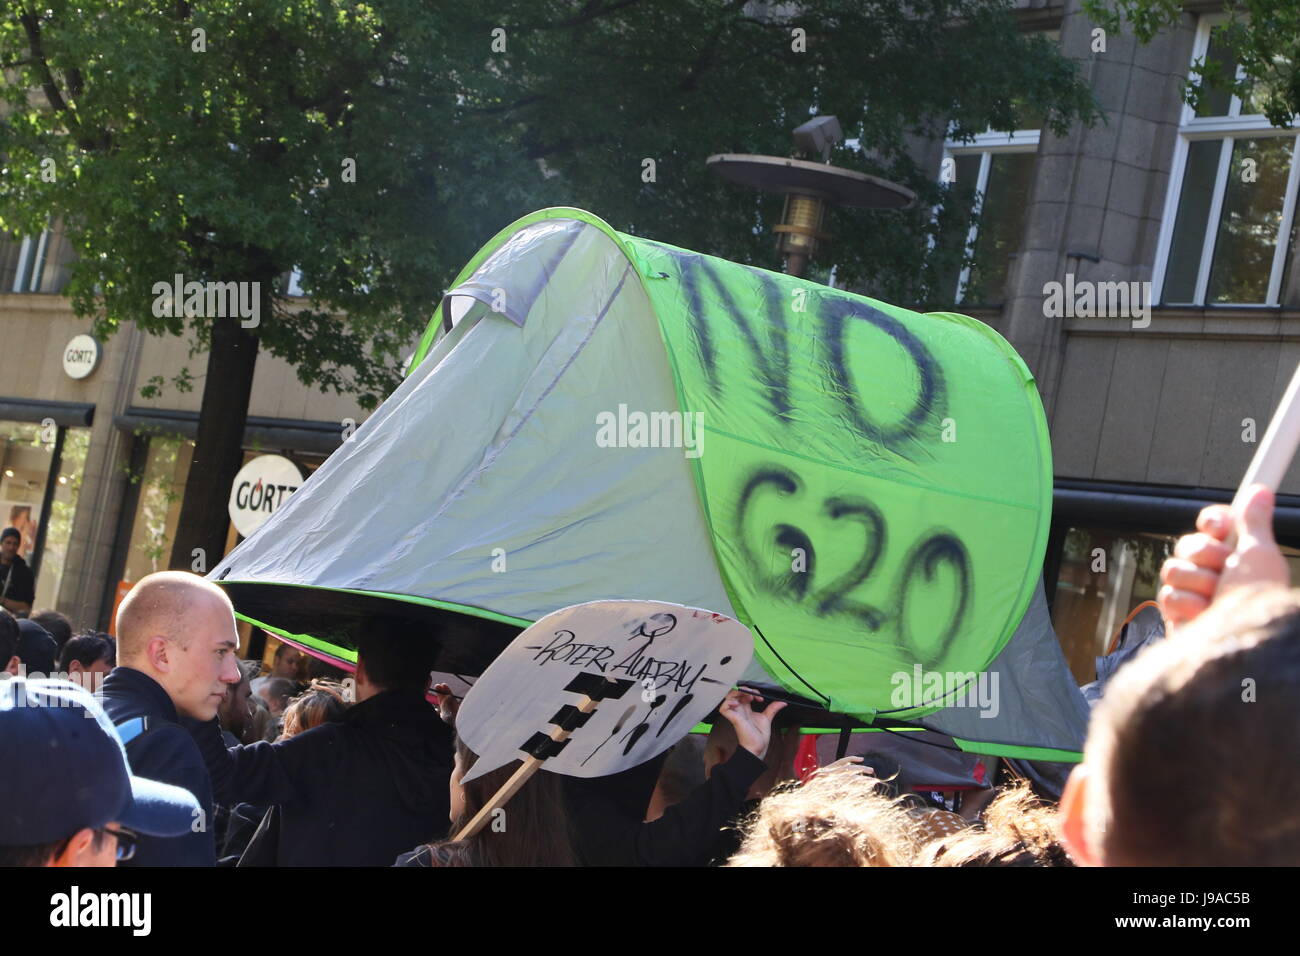 Hamburg, Deutschland, 31. Mai 2017. Demonstranten tragen eine Zelt mit der Aufschrift "keine G20" während einer Demonstration gegen den G20-Gipfel statt an der Mönckebergstraße, Hamburg, Deutschland, 31.05.2017. Bildnachweis: Christopher Tamcke/AlamyLiveNews Stockfoto